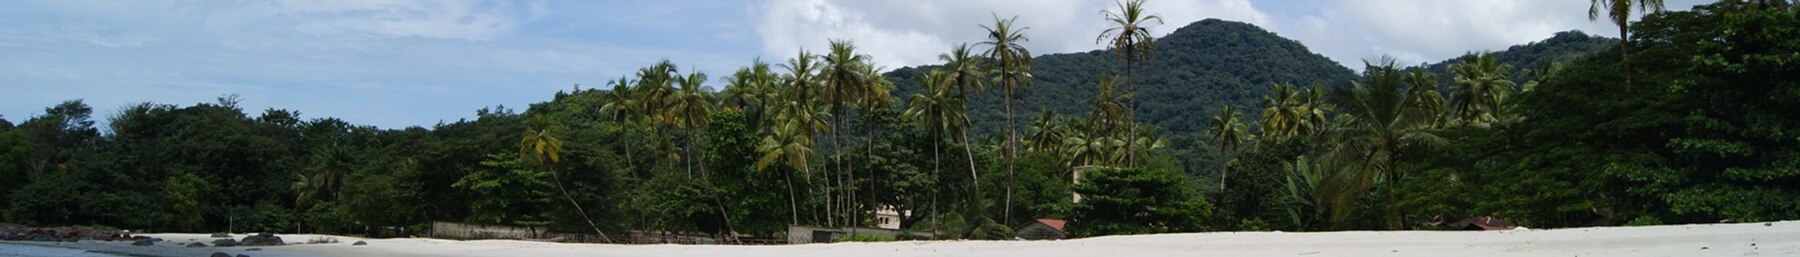 Sierra Leone banner Village beach.jpg